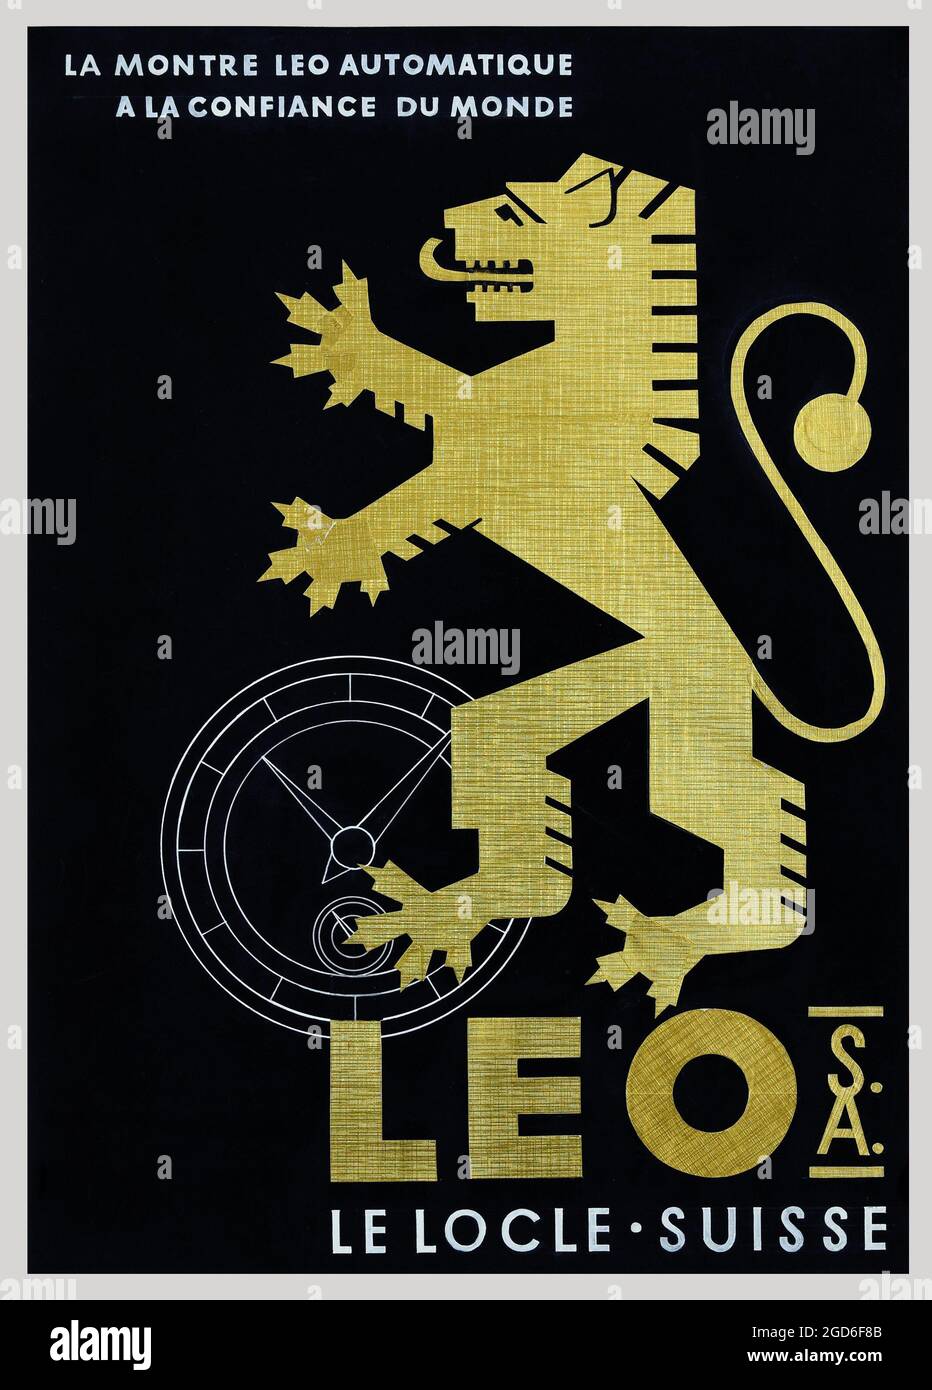 Alte und alte Werbung / Poster von A. Rentschler - Leo S.A. Le Locle Suisse – 1950. Schweiz, Schweiz, Schweiz. Stockfoto